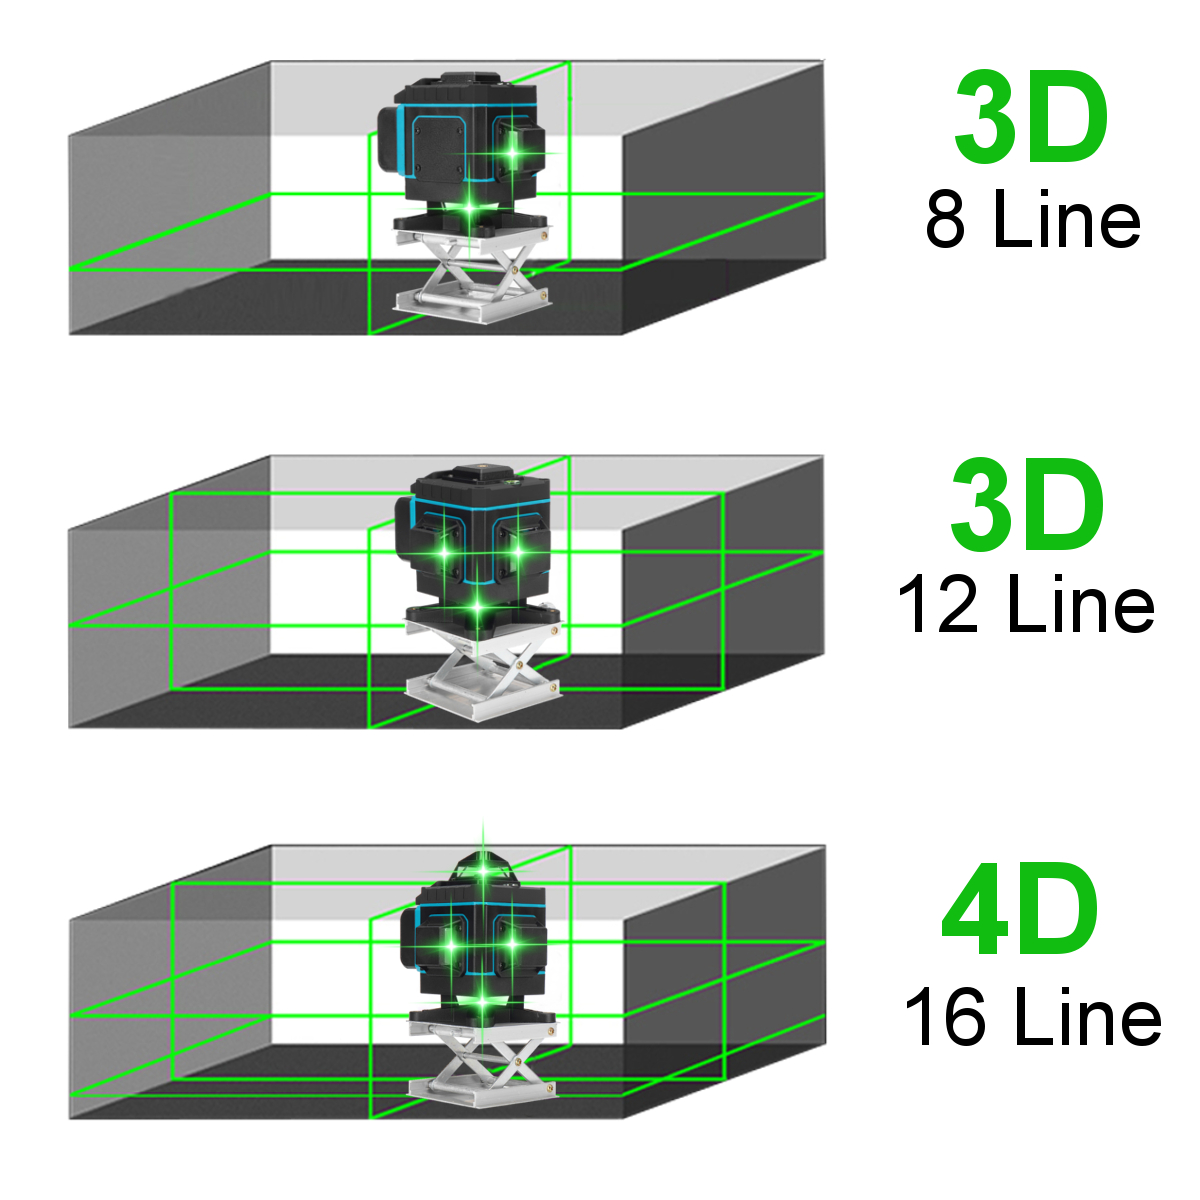 81216-Line-360deg-Horizontal-Vertical-Cross-4D-Green-Light-Laser-Level-Self-Leveling-Measure-Super-P-1895666-2